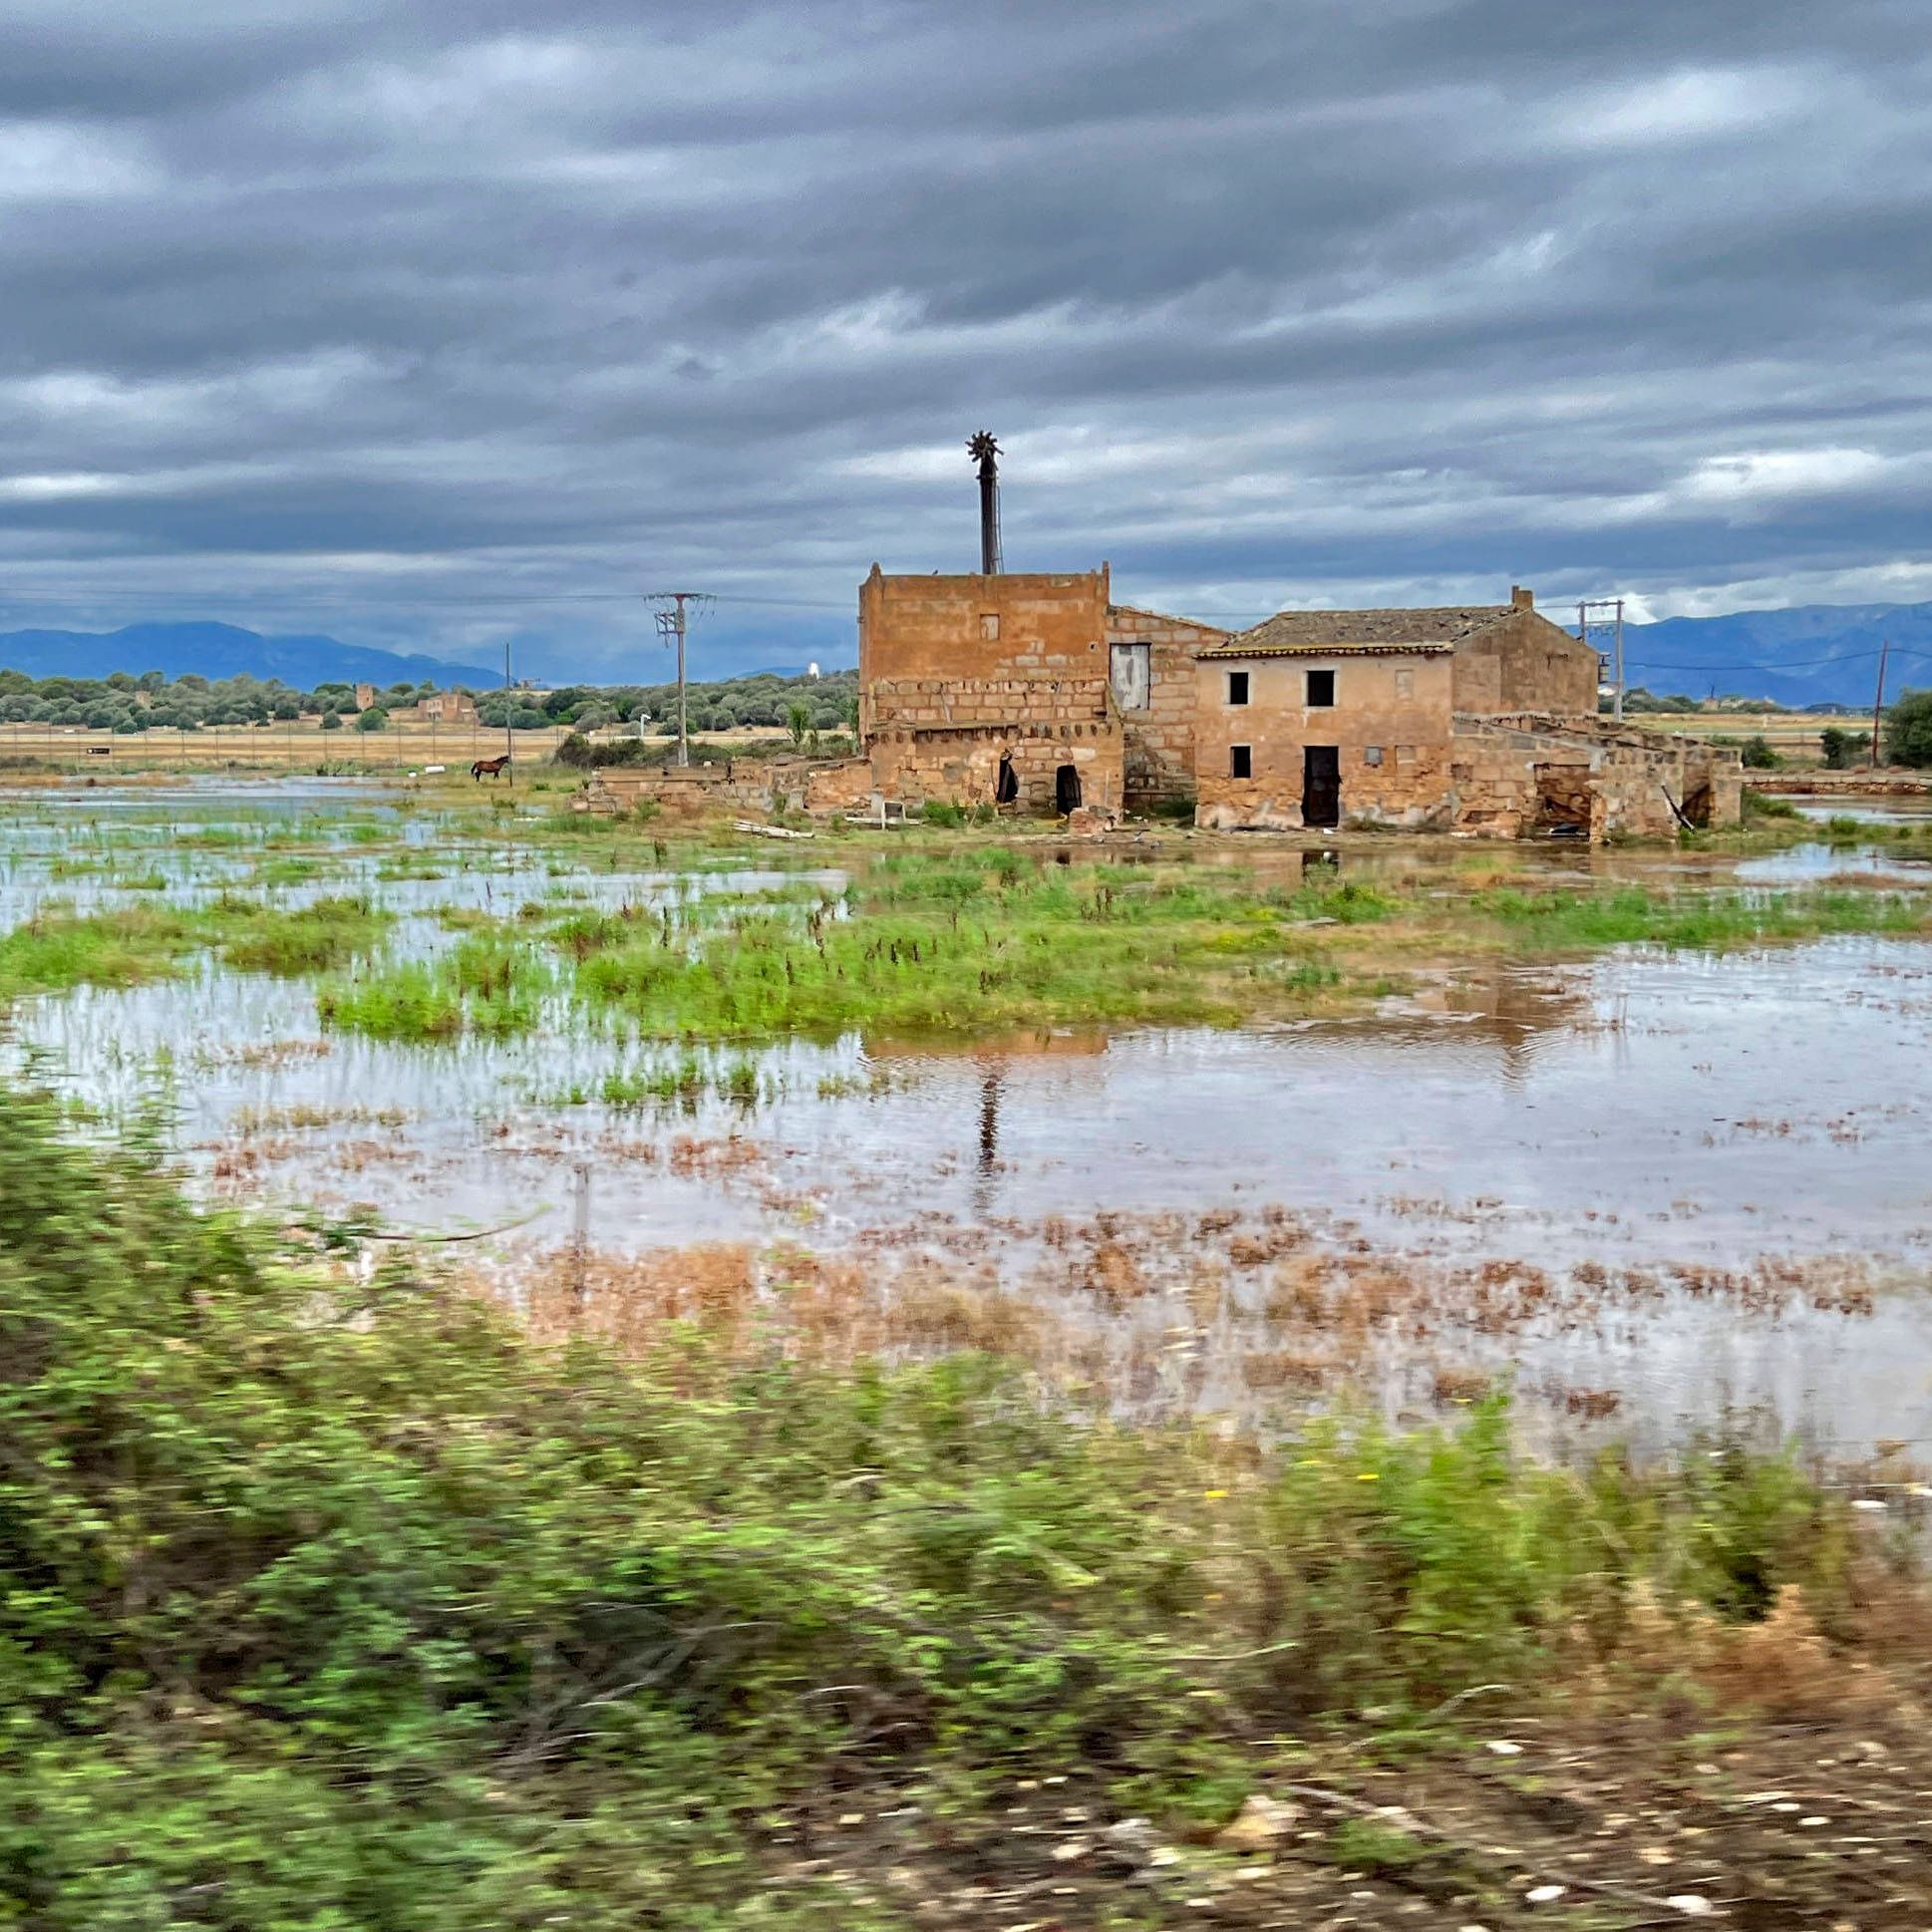 Überschwemmungen auf Mallorca: In der Nähe von Palma de Mallorca hat es zwei Tage heftig geregnet und viele Felder sind überschwemmt. Jetzt kehrt das Sommerwetter zurück.